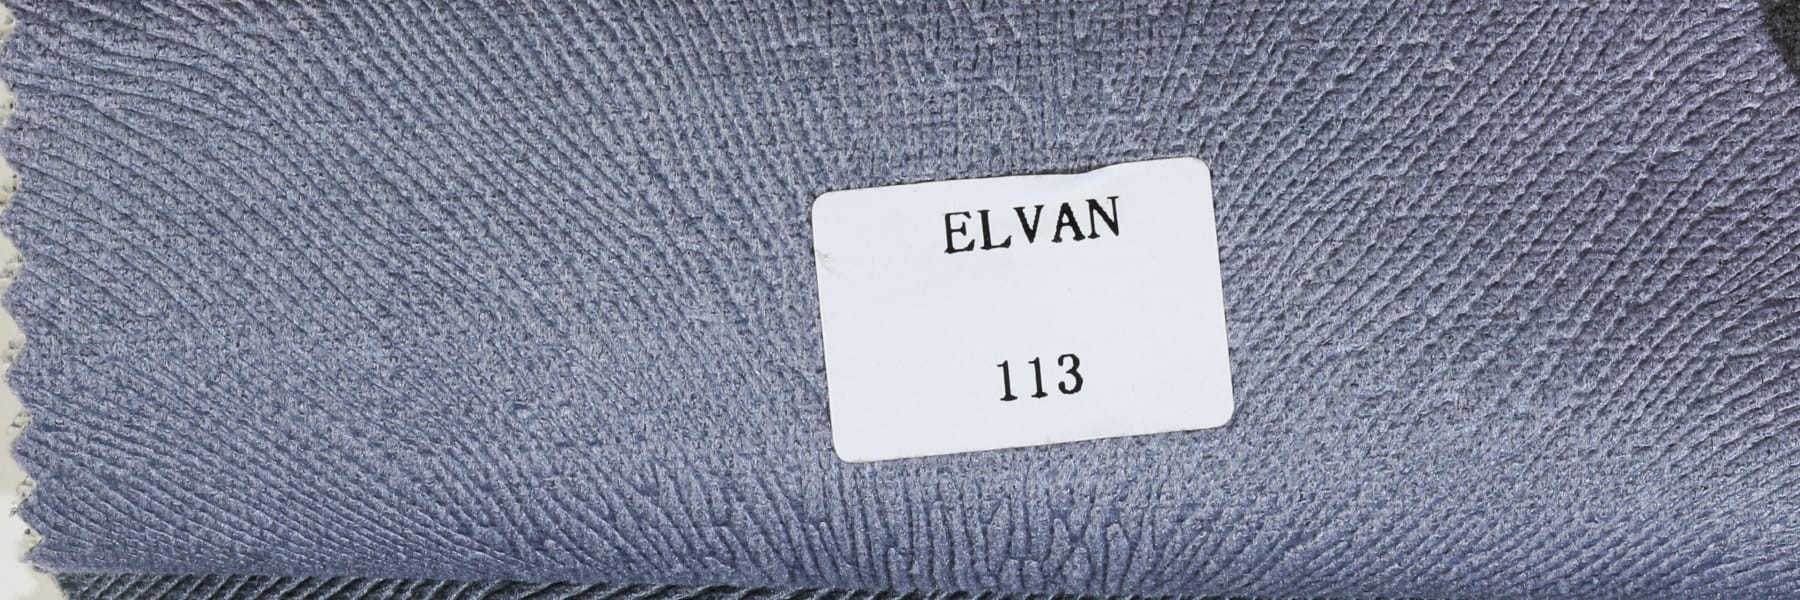 GRİ ELVAN 113